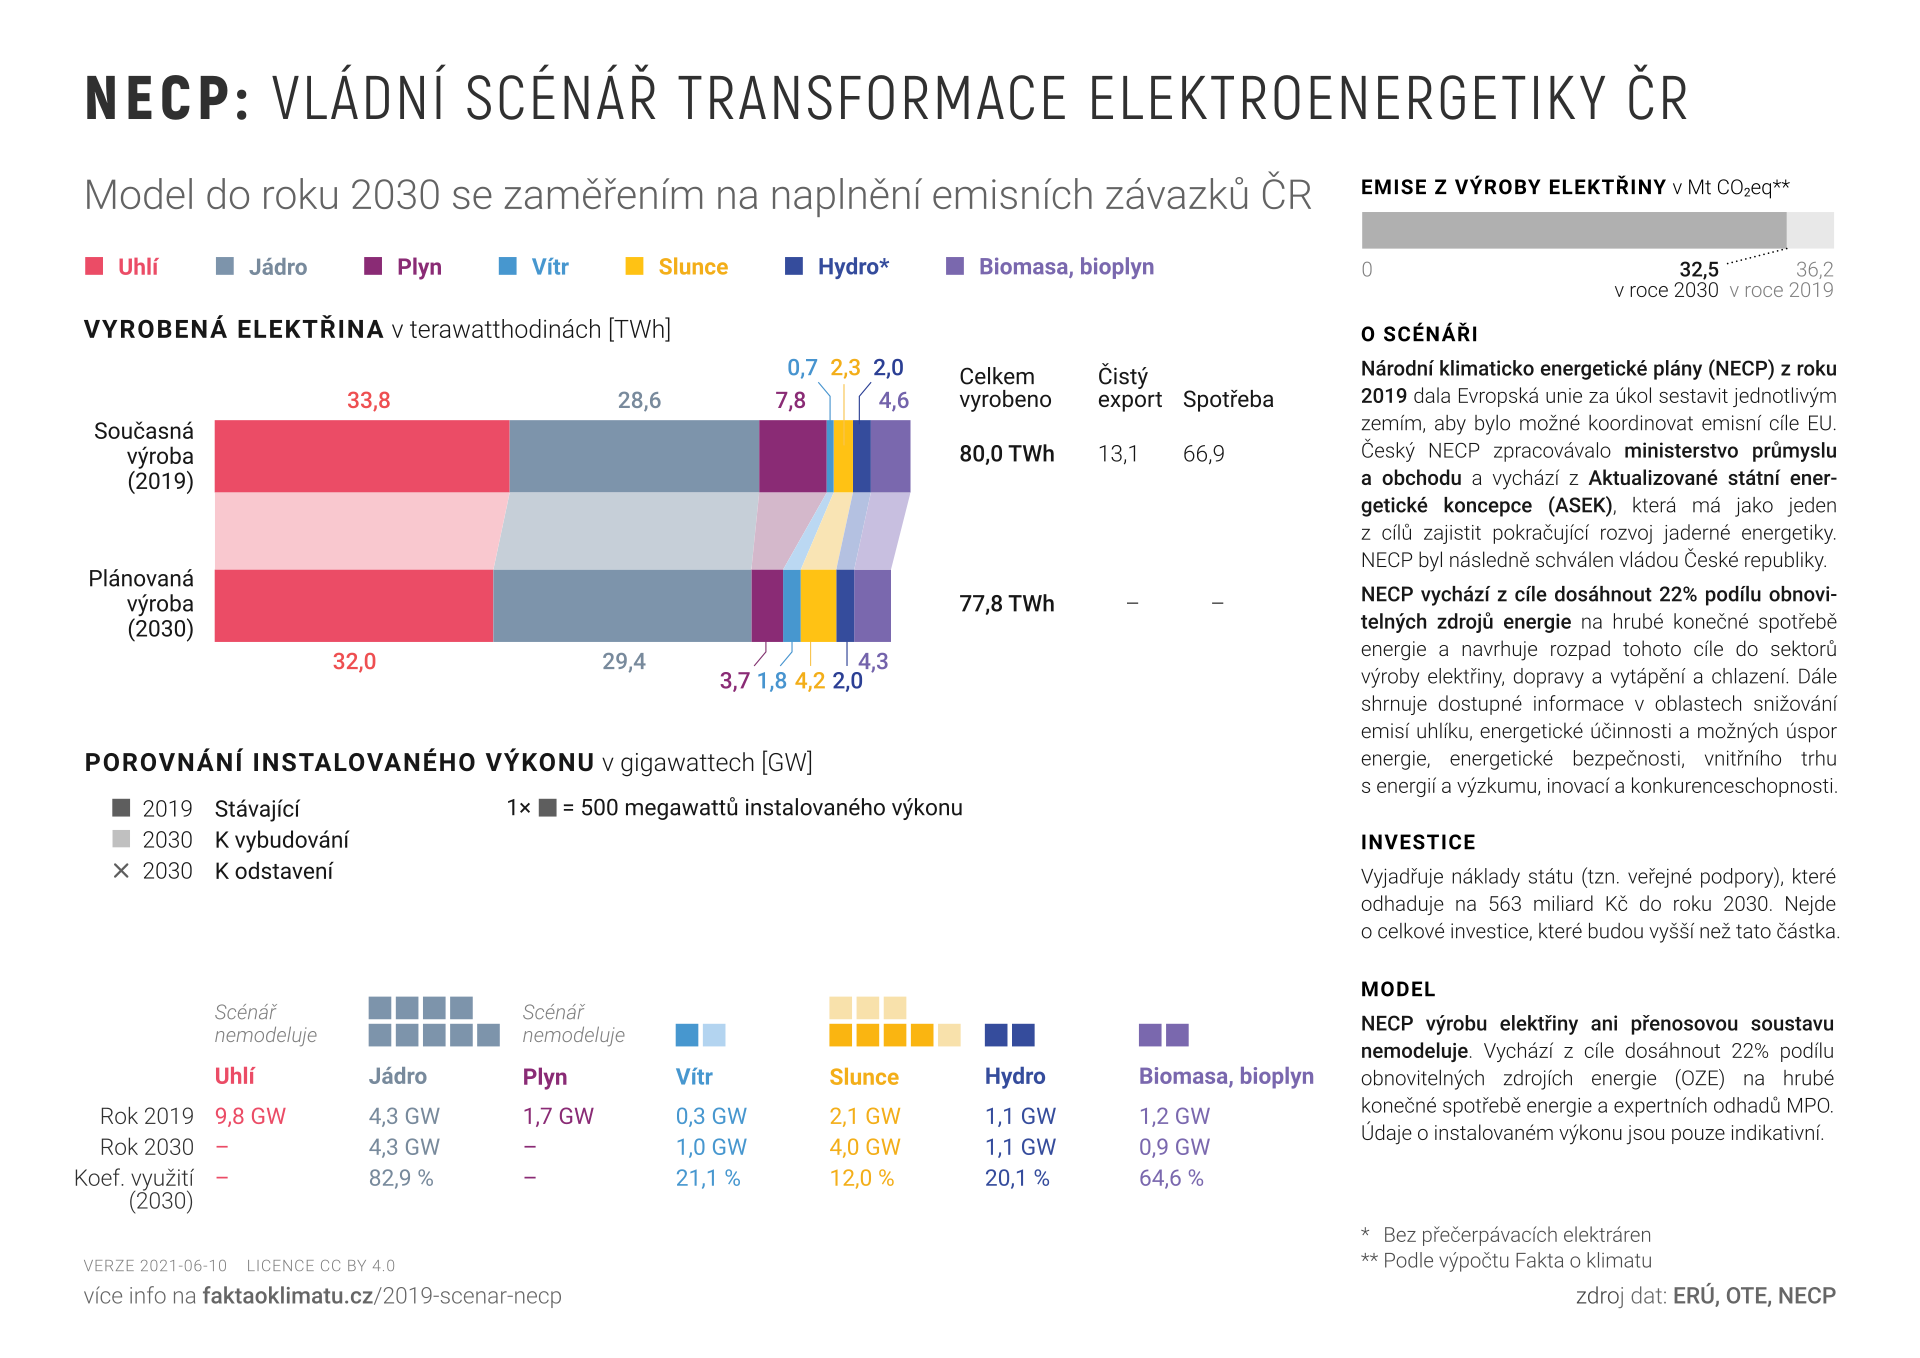 NECP: Scénář transformace elektroenergetiky ČR